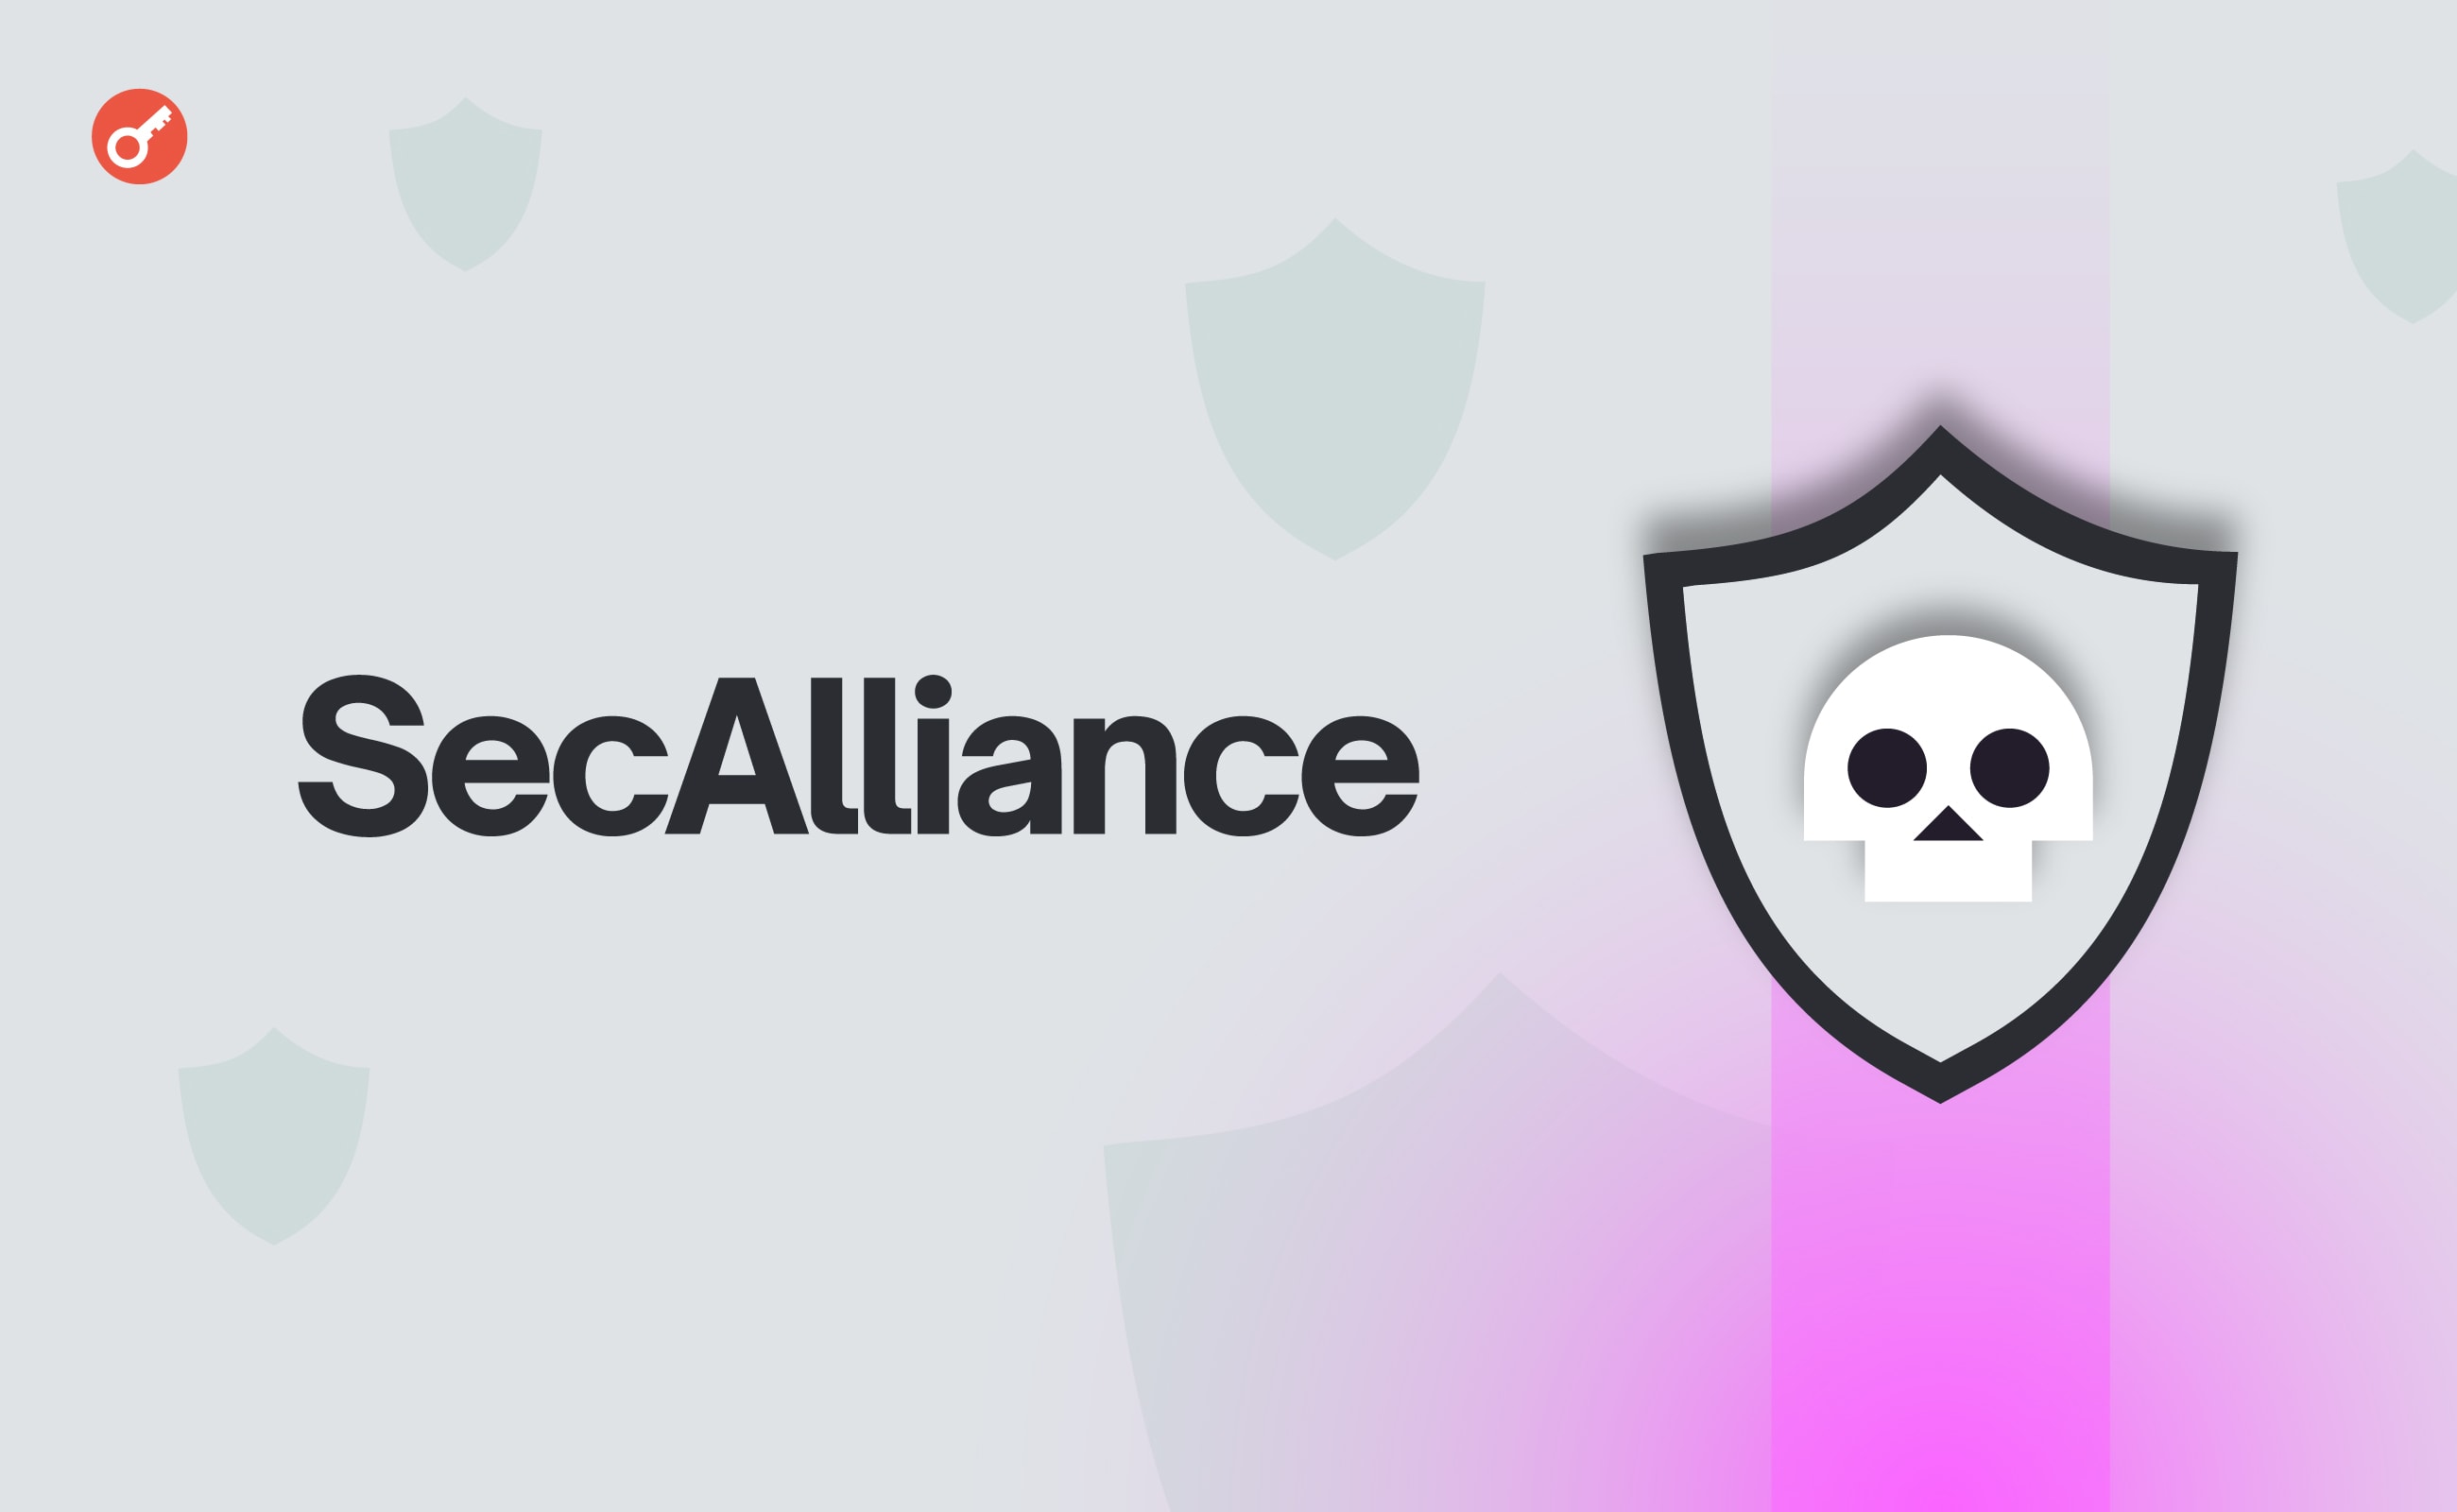 У США створили організацію Security Alliance для боротьби з хакерами. Головний колаж новини.